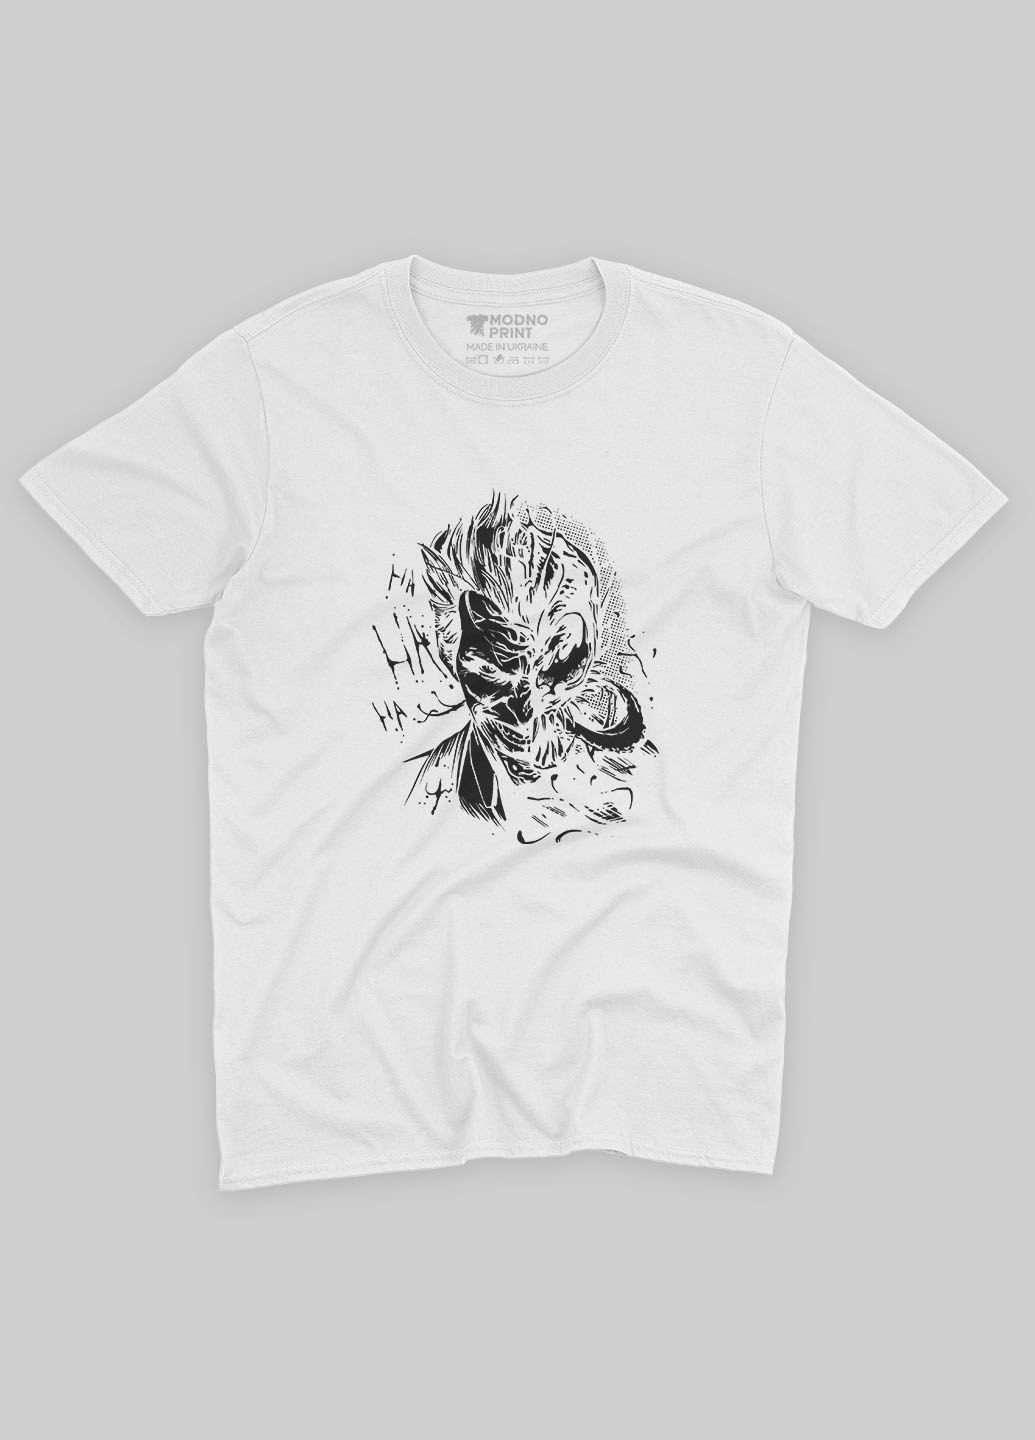 Біла демісезонна футболка для хлопчика з принтом суперзлодія - джокер (ts001-1-whi-006-005-028-b) Modno